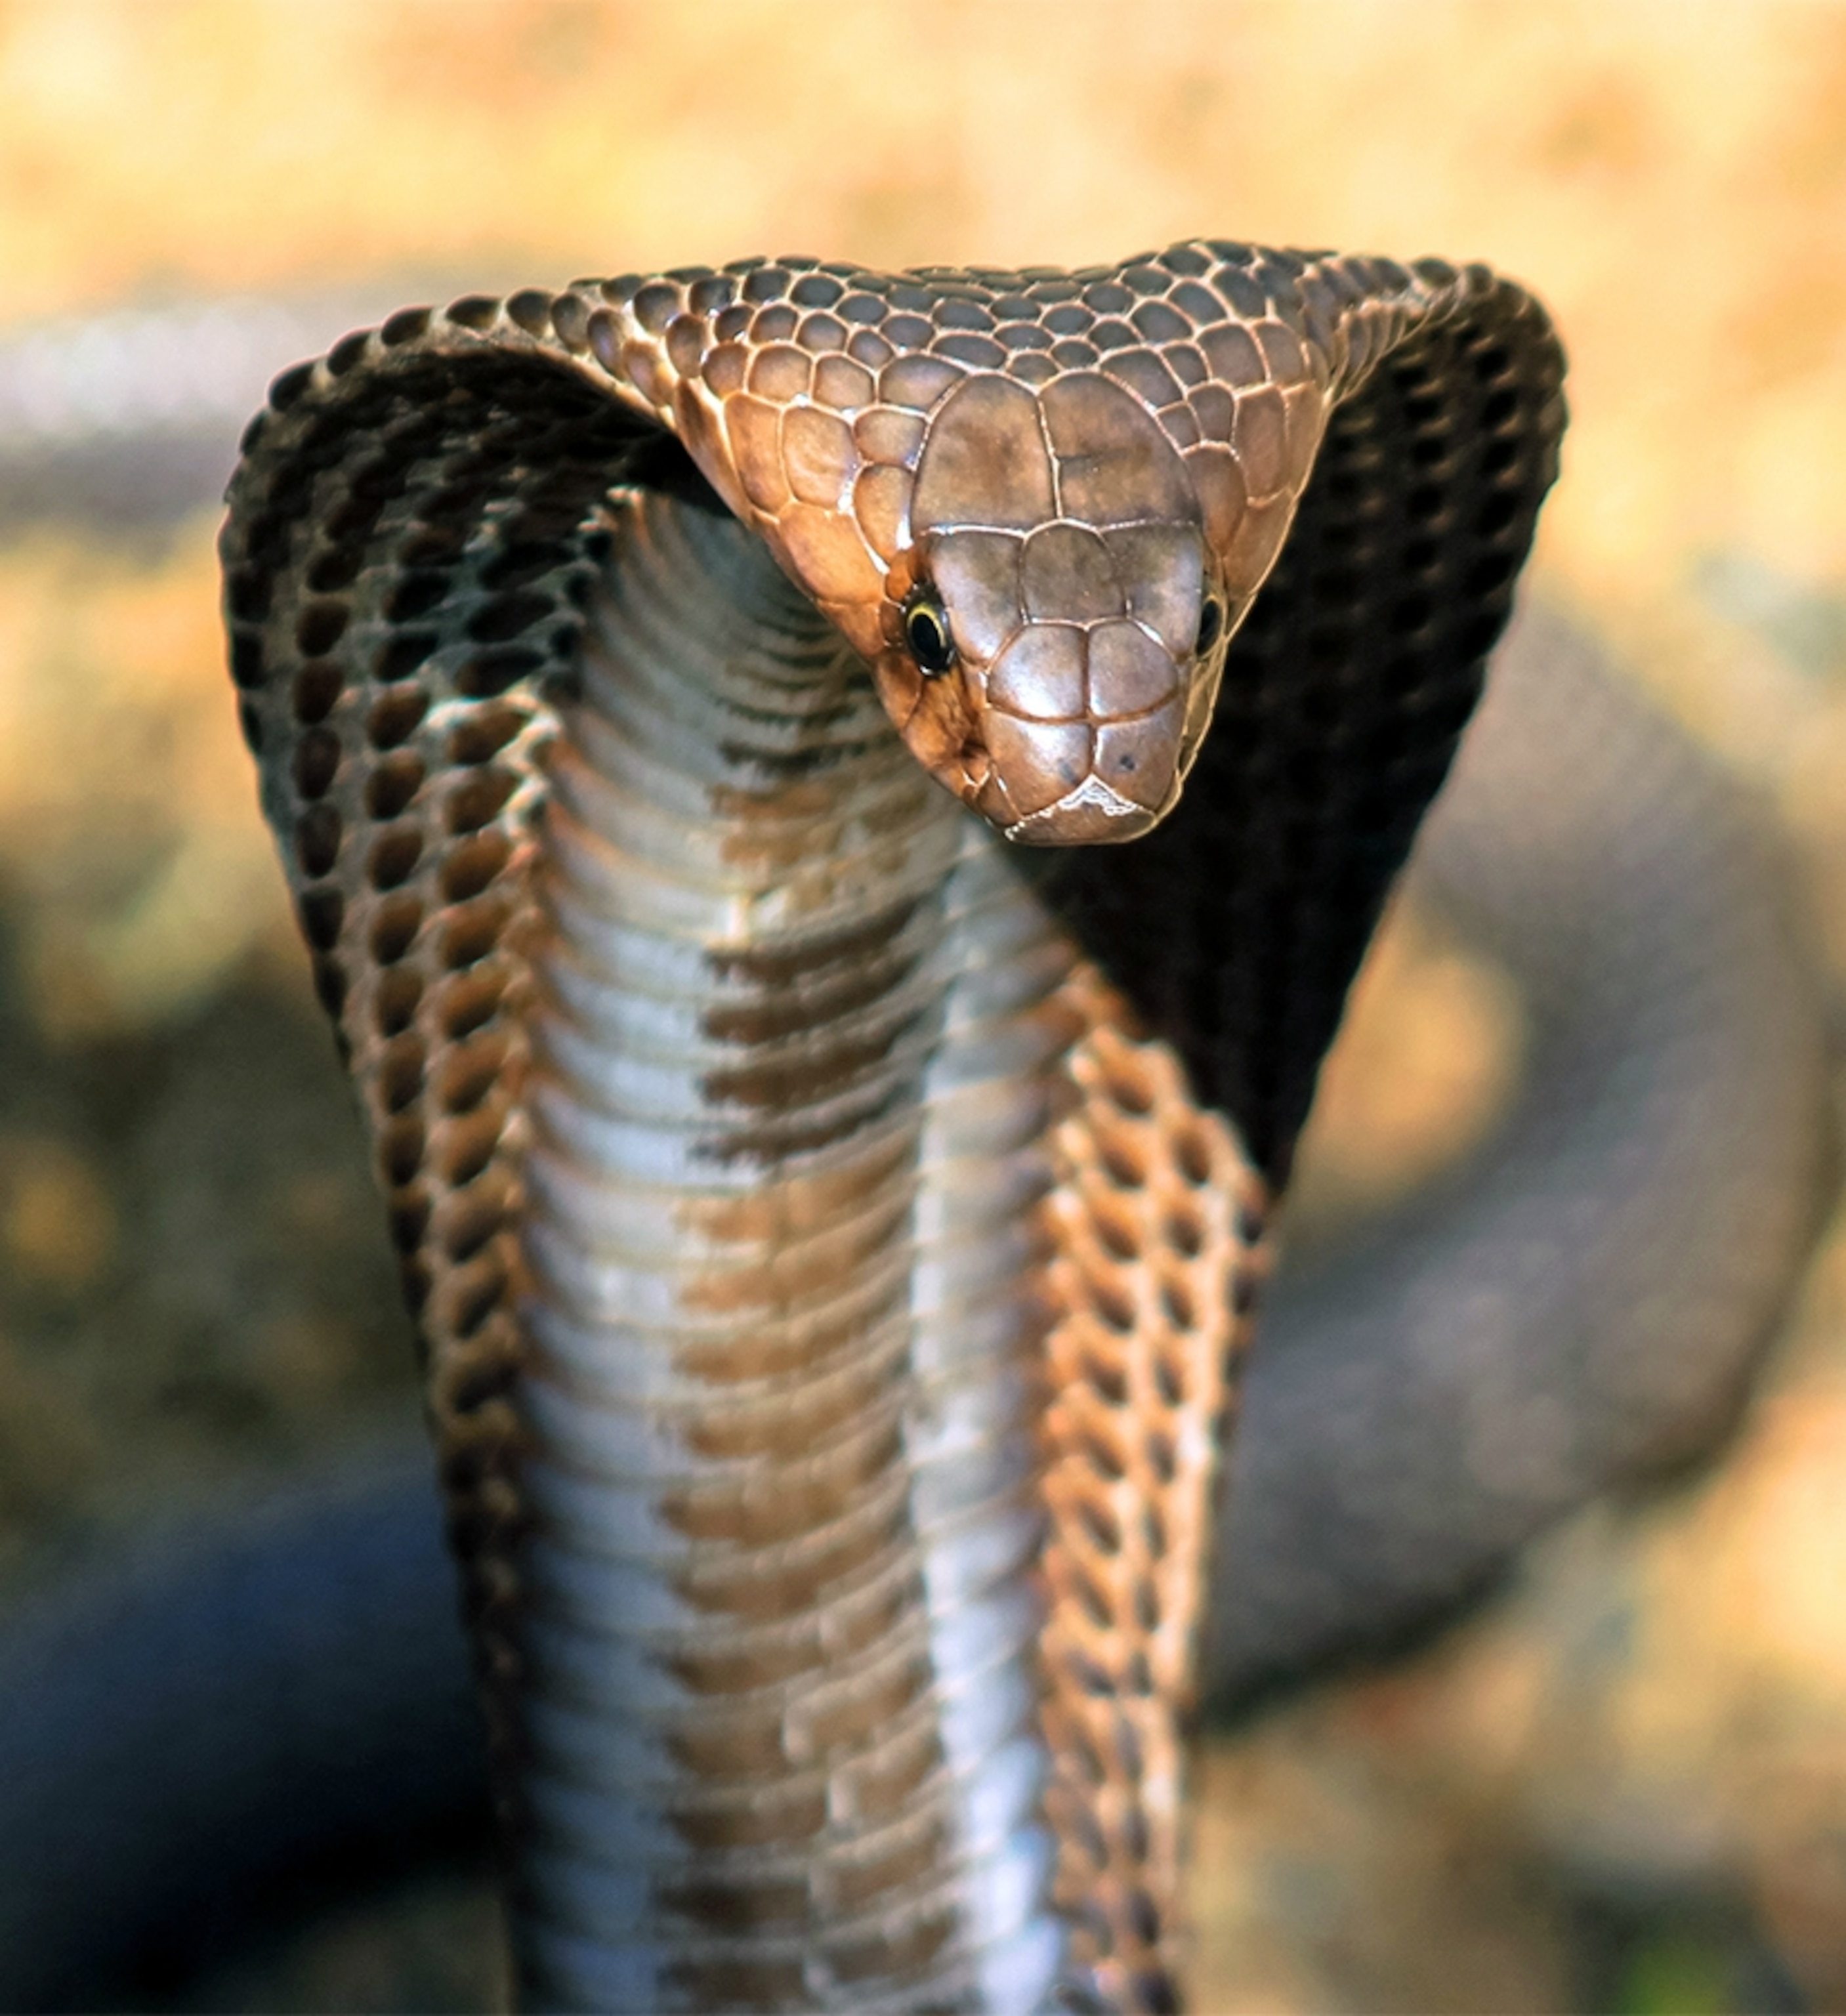 King Cobra Snake Pictures - KibrisPDR